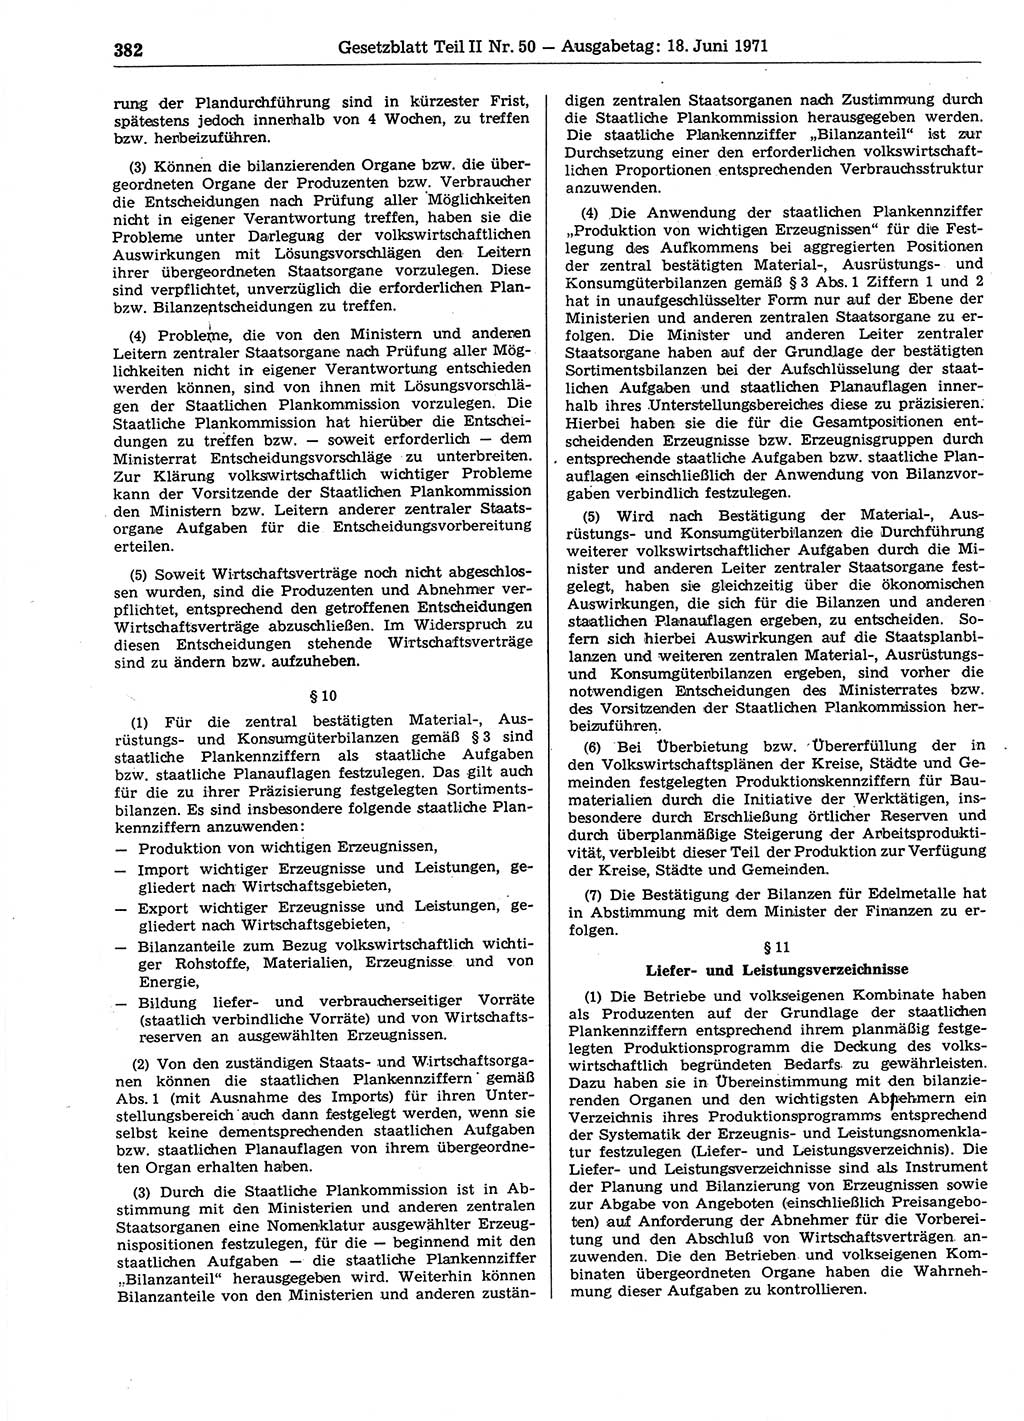 Gesetzblatt (GBl.) der Deutschen Demokratischen Republik (DDR) Teil ⅠⅠ 1971, Seite 382 (GBl. DDR ⅠⅠ 1971, S. 382)